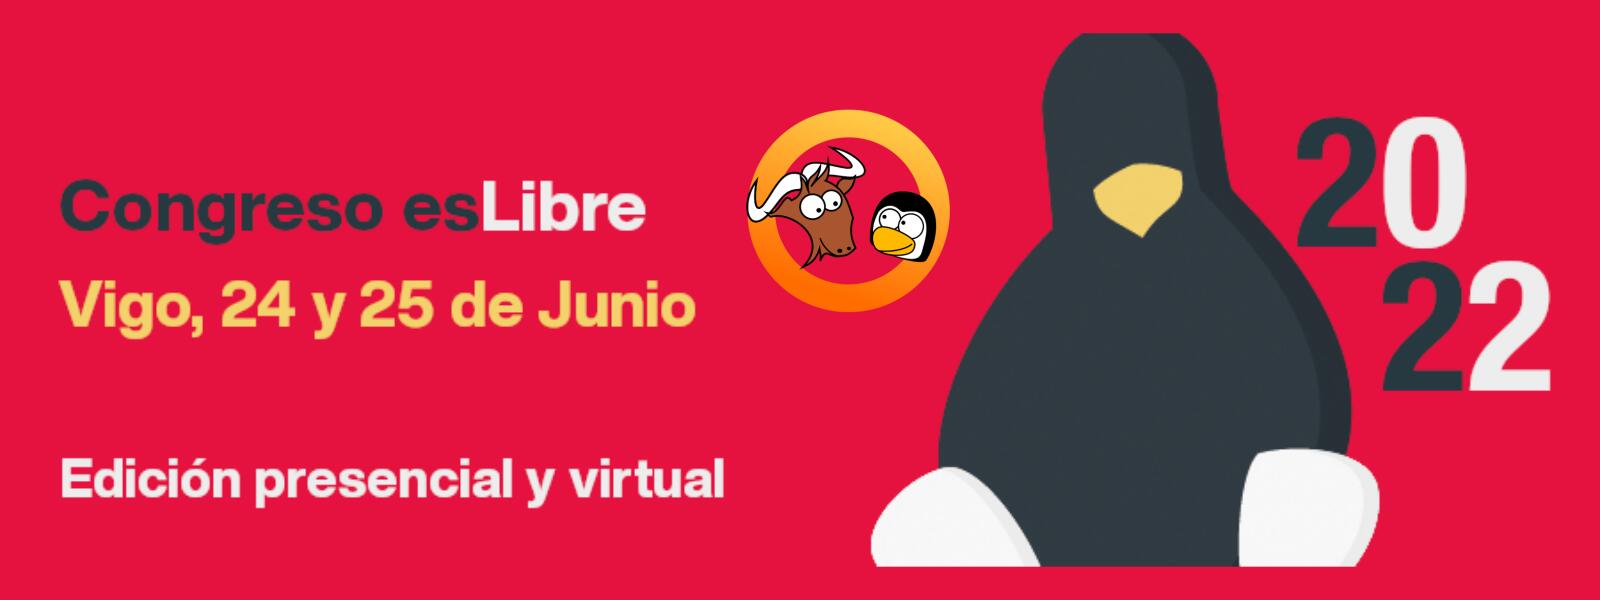 El congreso esLibre 2022 tendrá lugar en Vigo, en el mes de junio